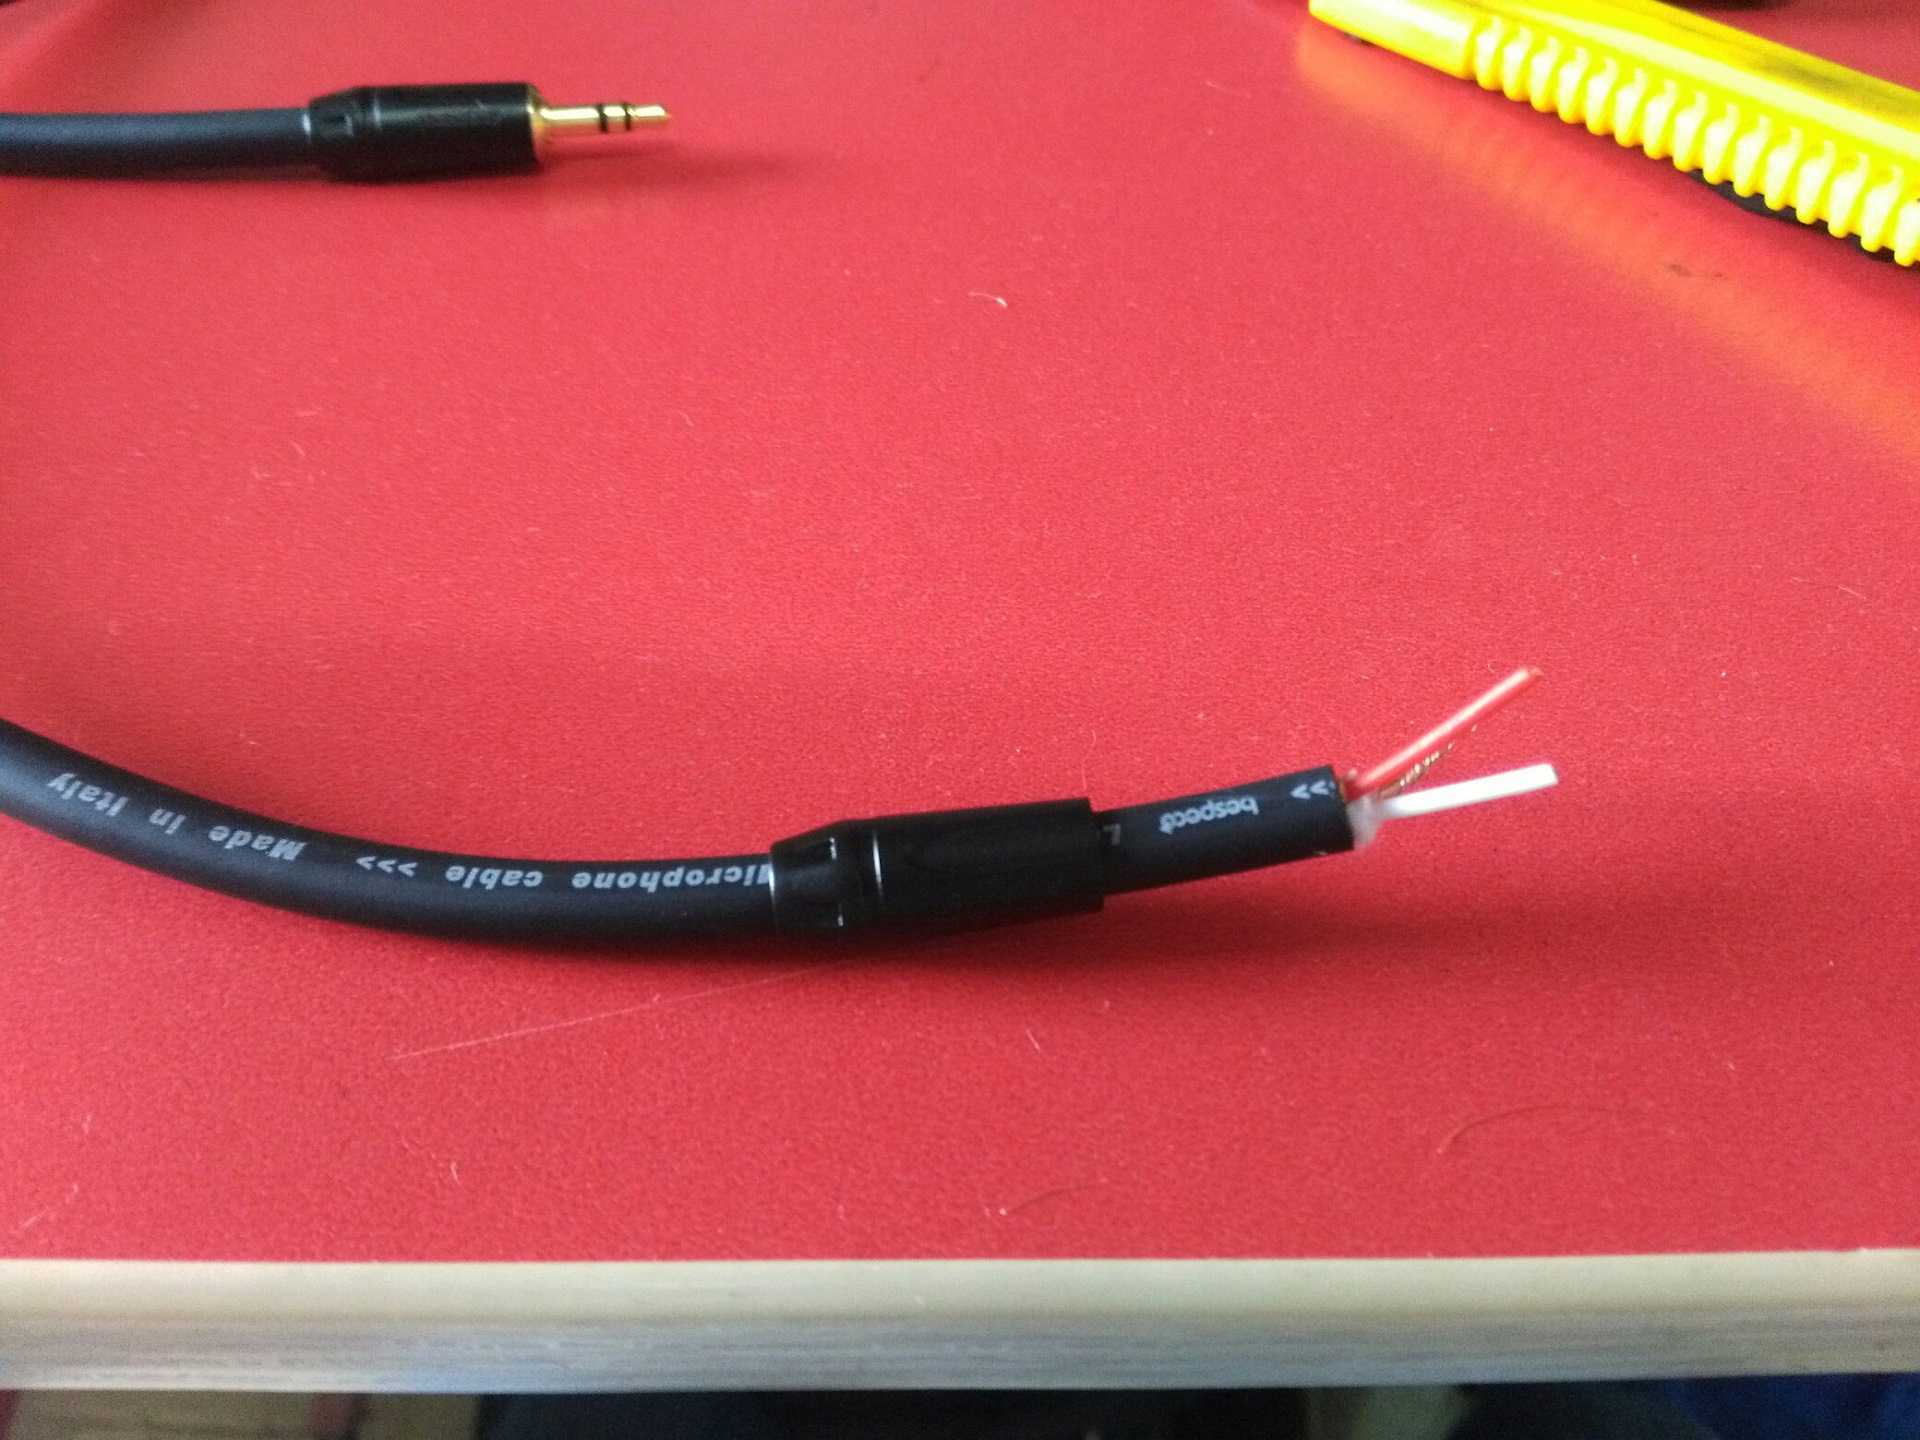 Aux для магнитолы: что это, для чего предназначен вывод и как подключить кабель к магнитоле в машине